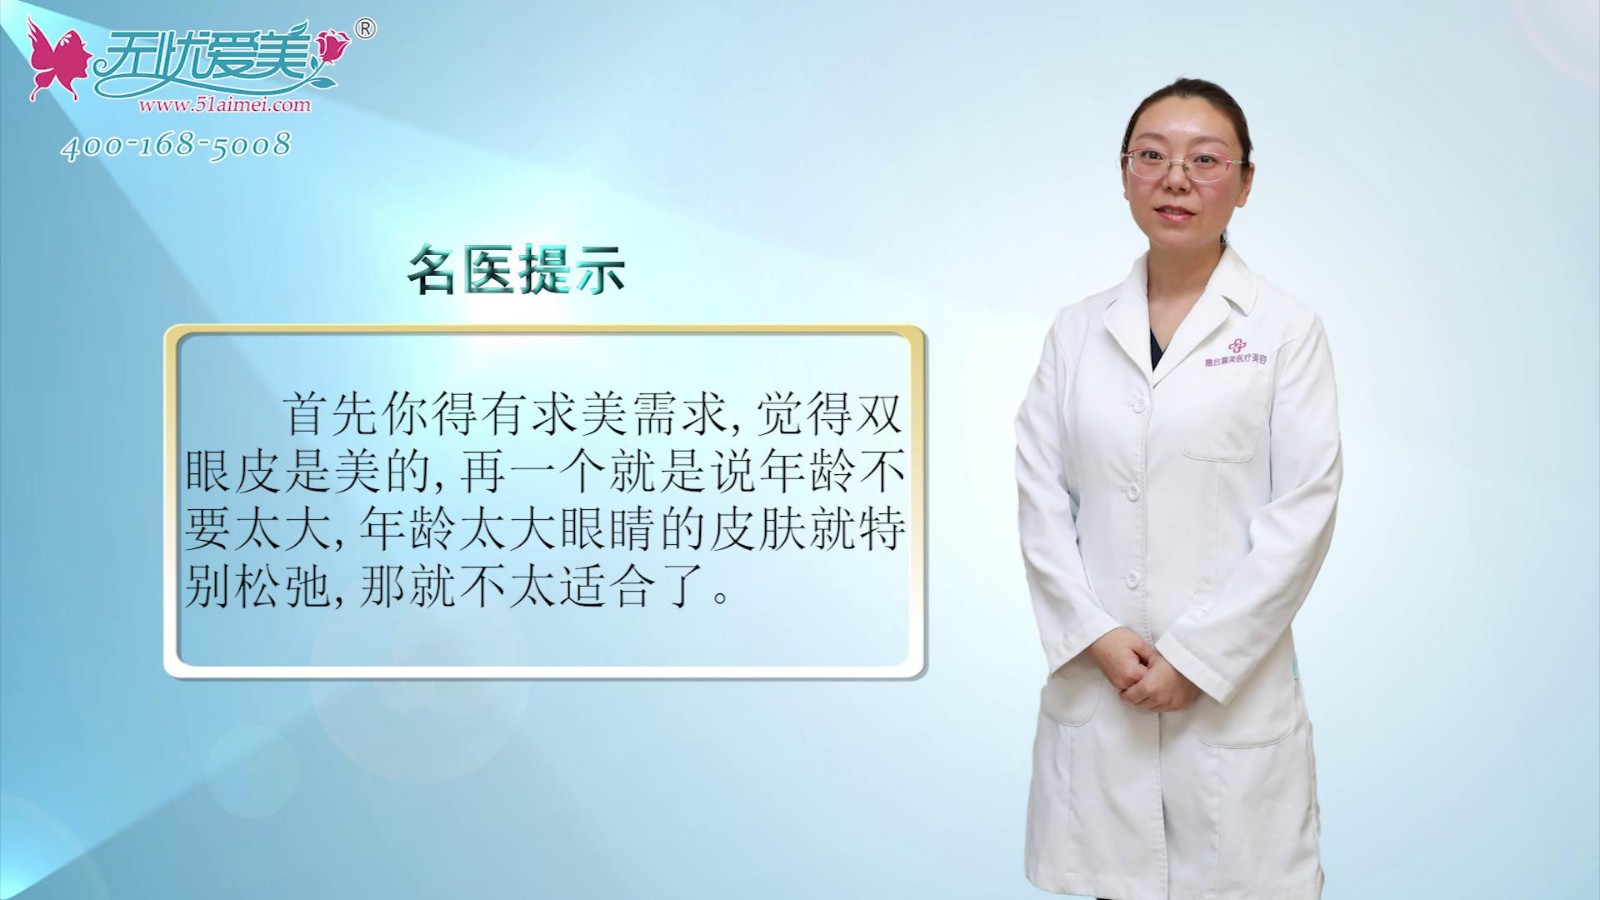 彩贝视频专访北京惠合嘉美双眼皮精雕与其他医院的不同